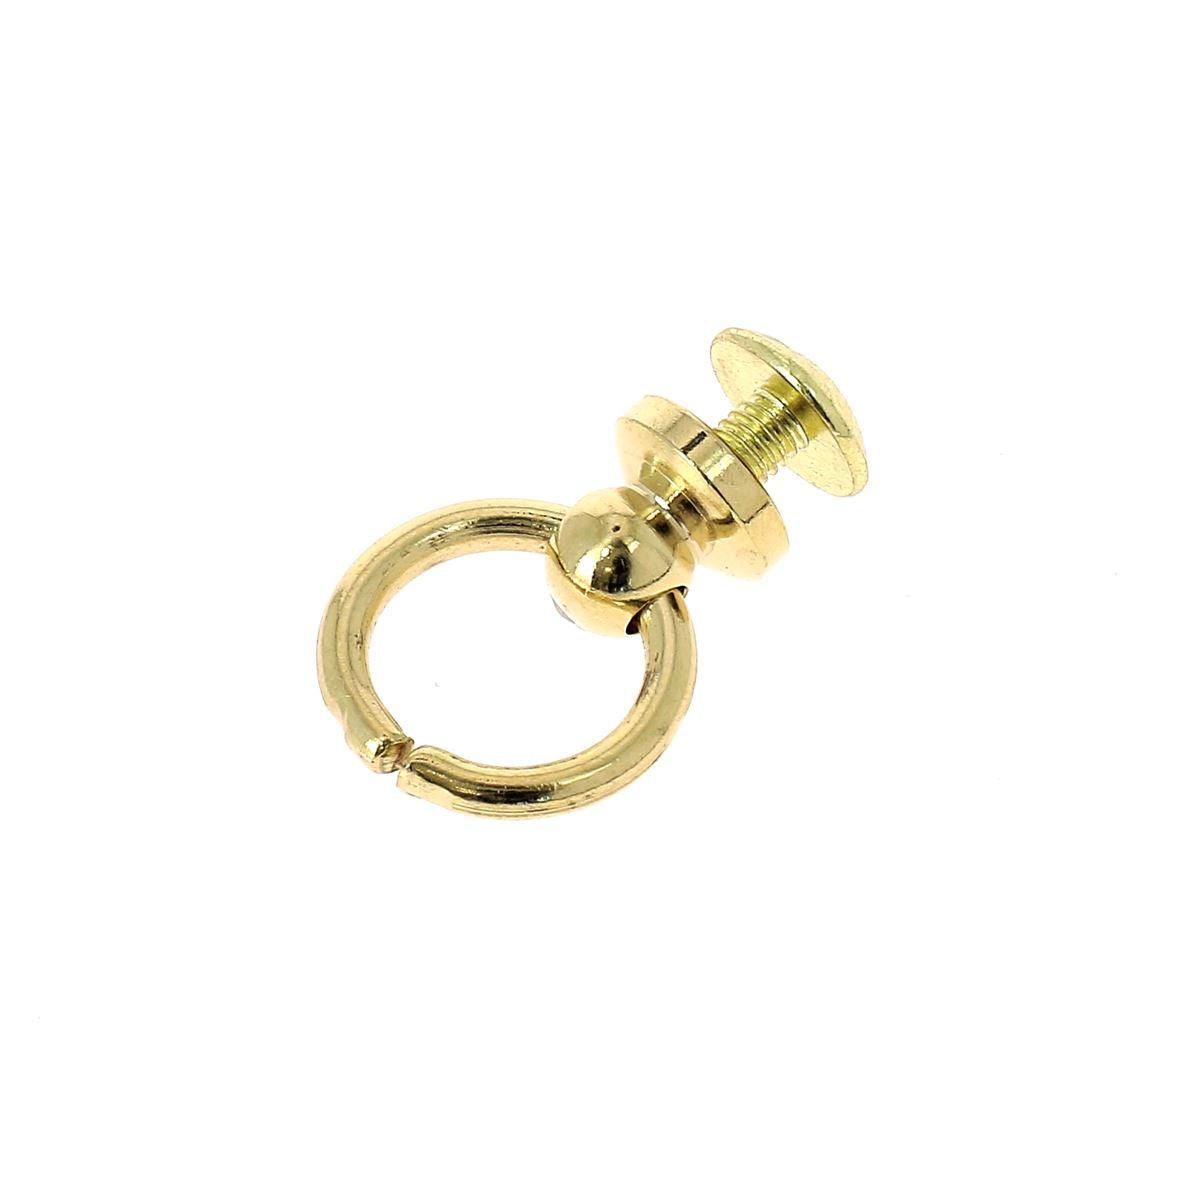 bouton cuir 15 mm haut de gamme couleur marron accroche un anneau